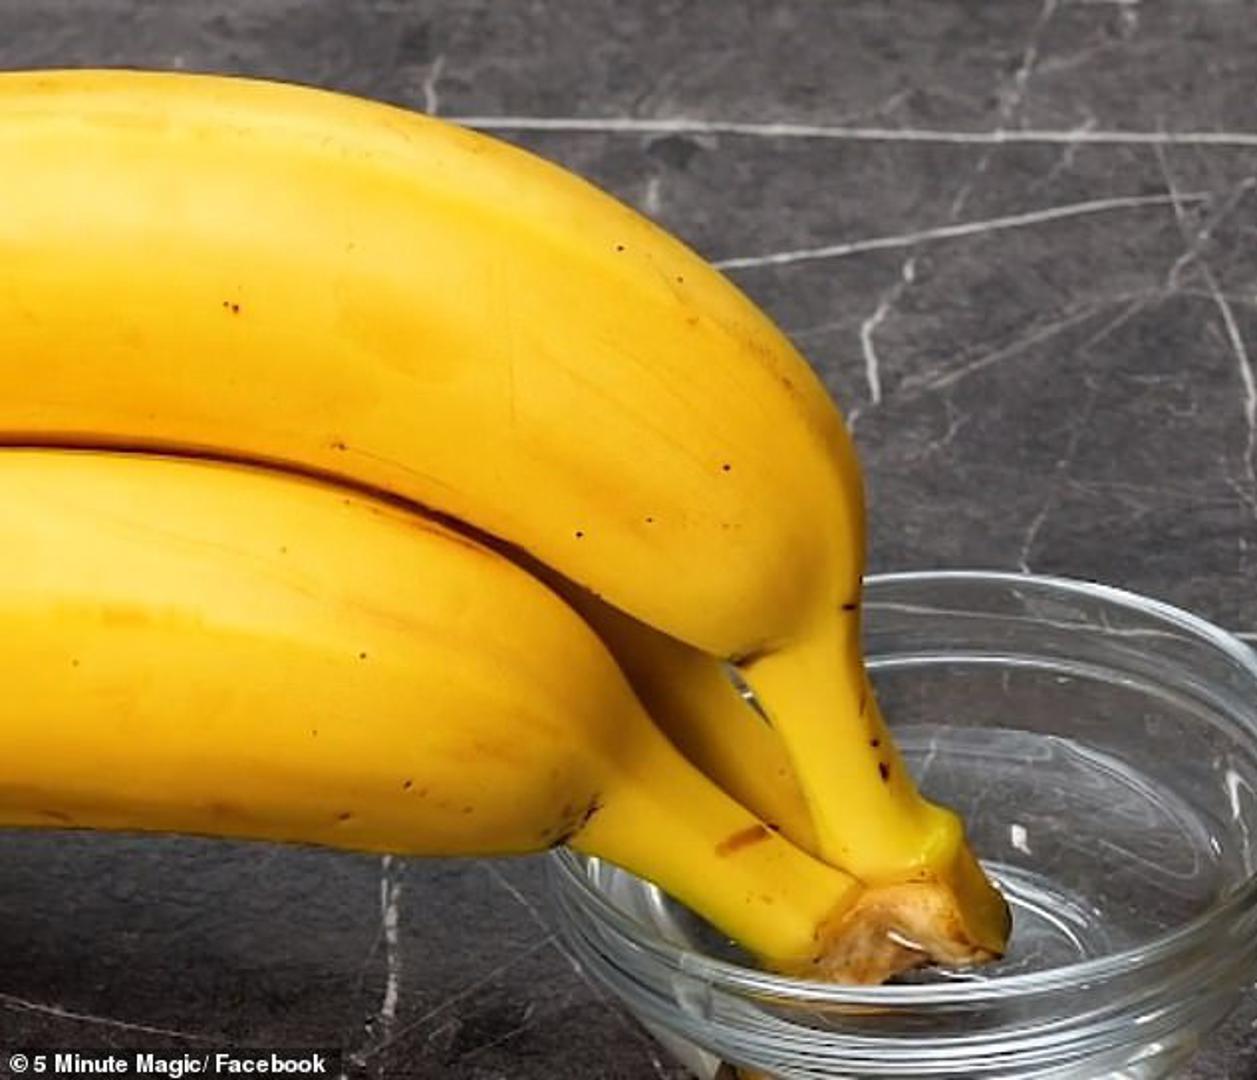 Banane će duže trajati ako im vrškove namočite u vodu. Tako mogu stajati i više od tri tjedna. Voda sprječava da se izluči etilen, zbog kojeg banane pocrne. 